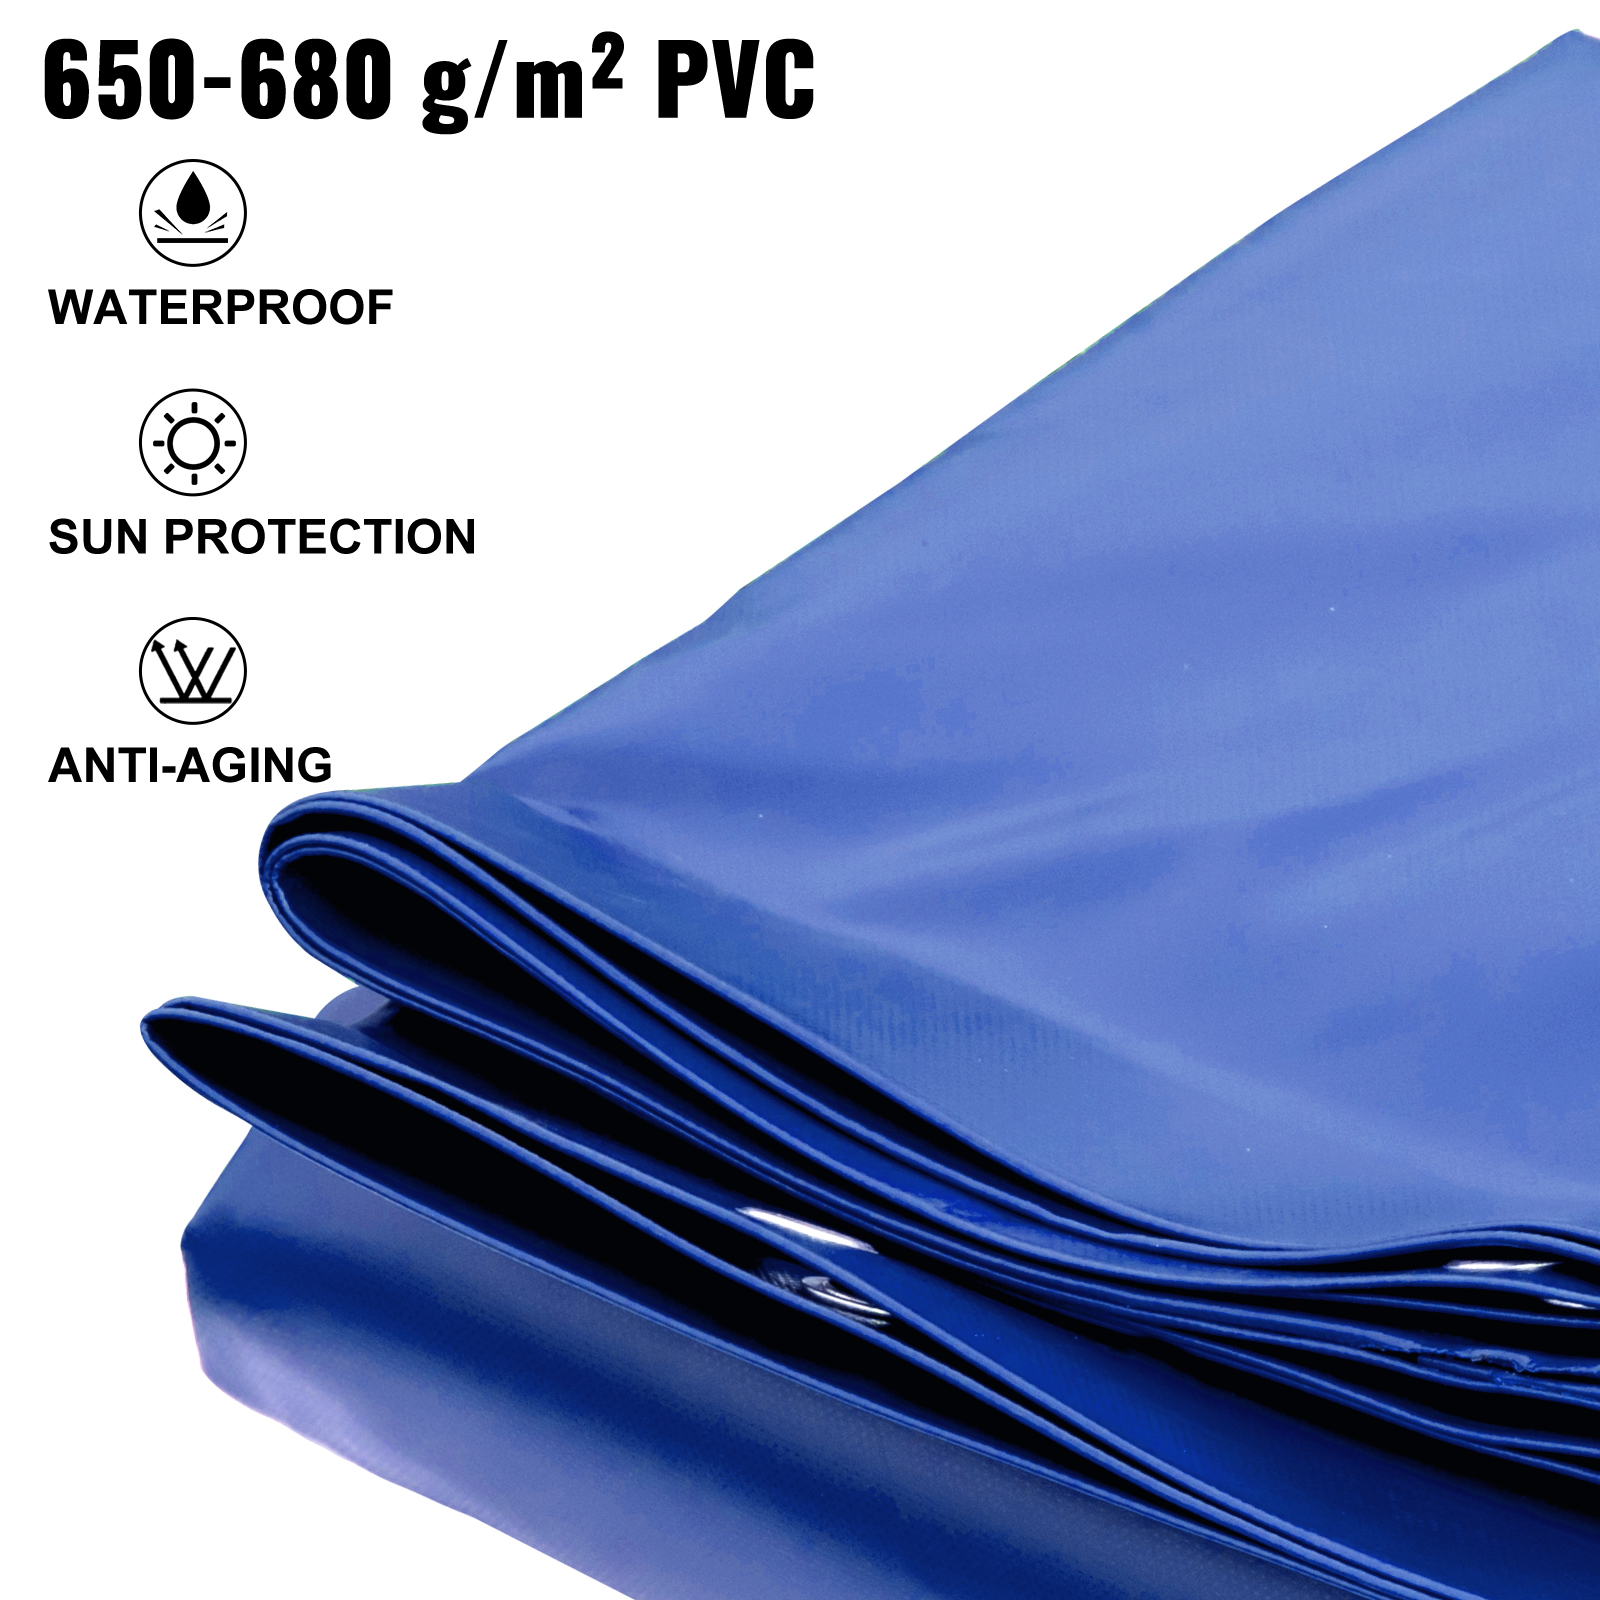 VEVOR medence ponyva téglalap alakú 4 x 7 m téli ponyva PVC anyag úszómedence burkolat medencetakaró kék vízálló medence tető téglalap medence ponyva szennyeződéstaszító ponyva medencéhez